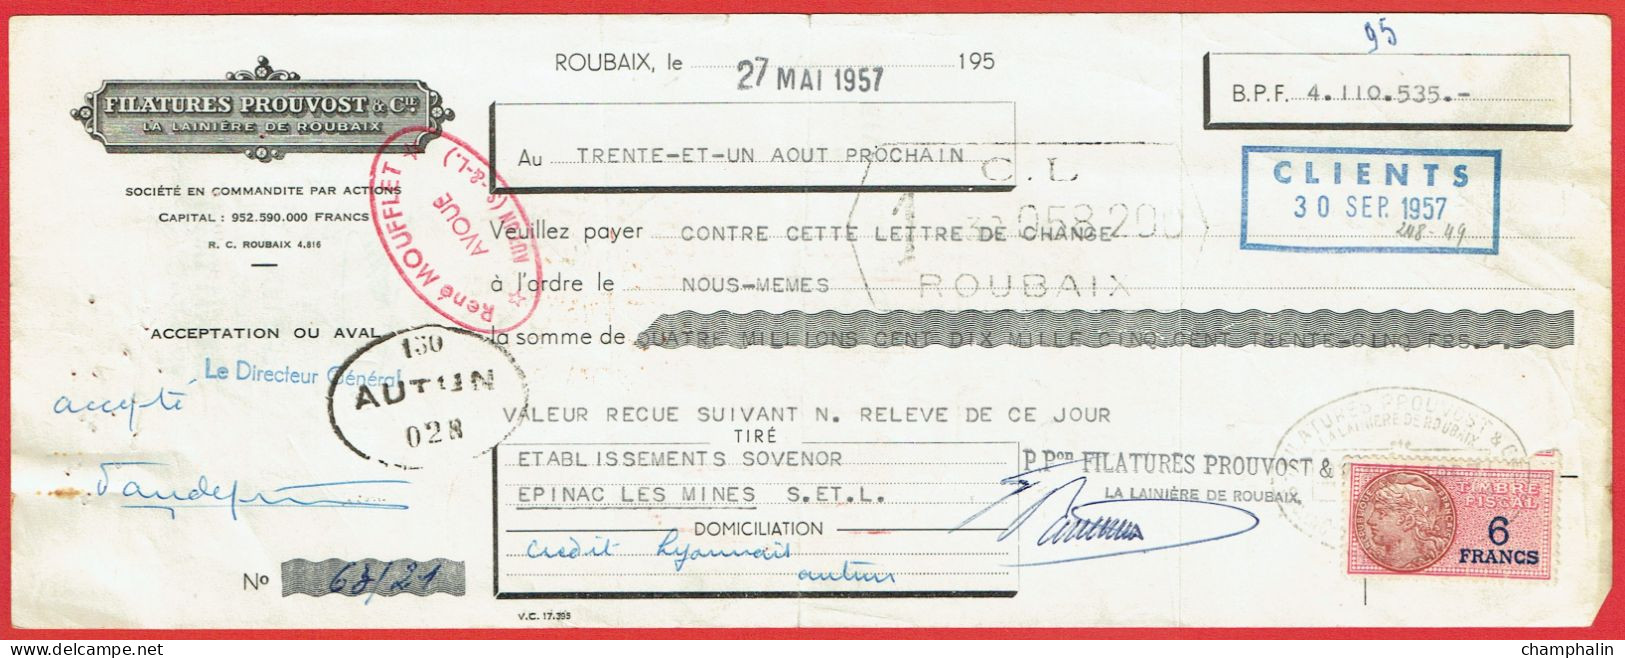 Lot 8 Lettres De Change De Roubaix (59) Pour Epinac-les-Mines (71) - 1957 - Timbre TF N°439-440 - Filatures Prouvost - Letras De Cambio